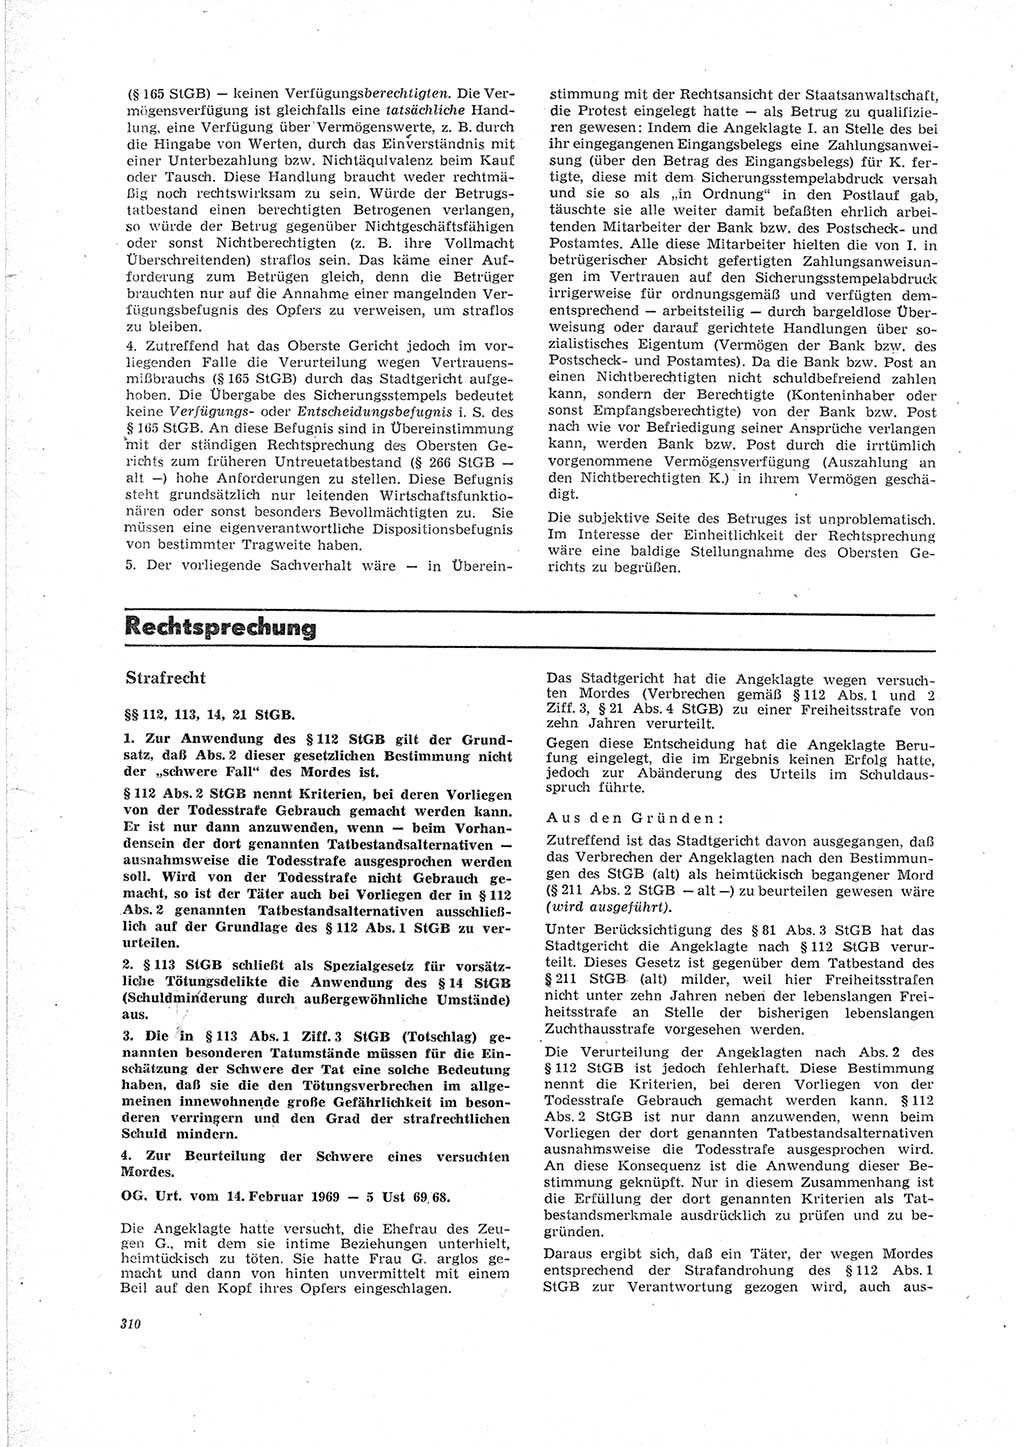 Neue Justiz (NJ), Zeitschrift für Recht und Rechtswissenschaft [Deutsche Demokratische Republik (DDR)], 23. Jahrgang 1969, Seite 310 (NJ DDR 1969, S. 310)